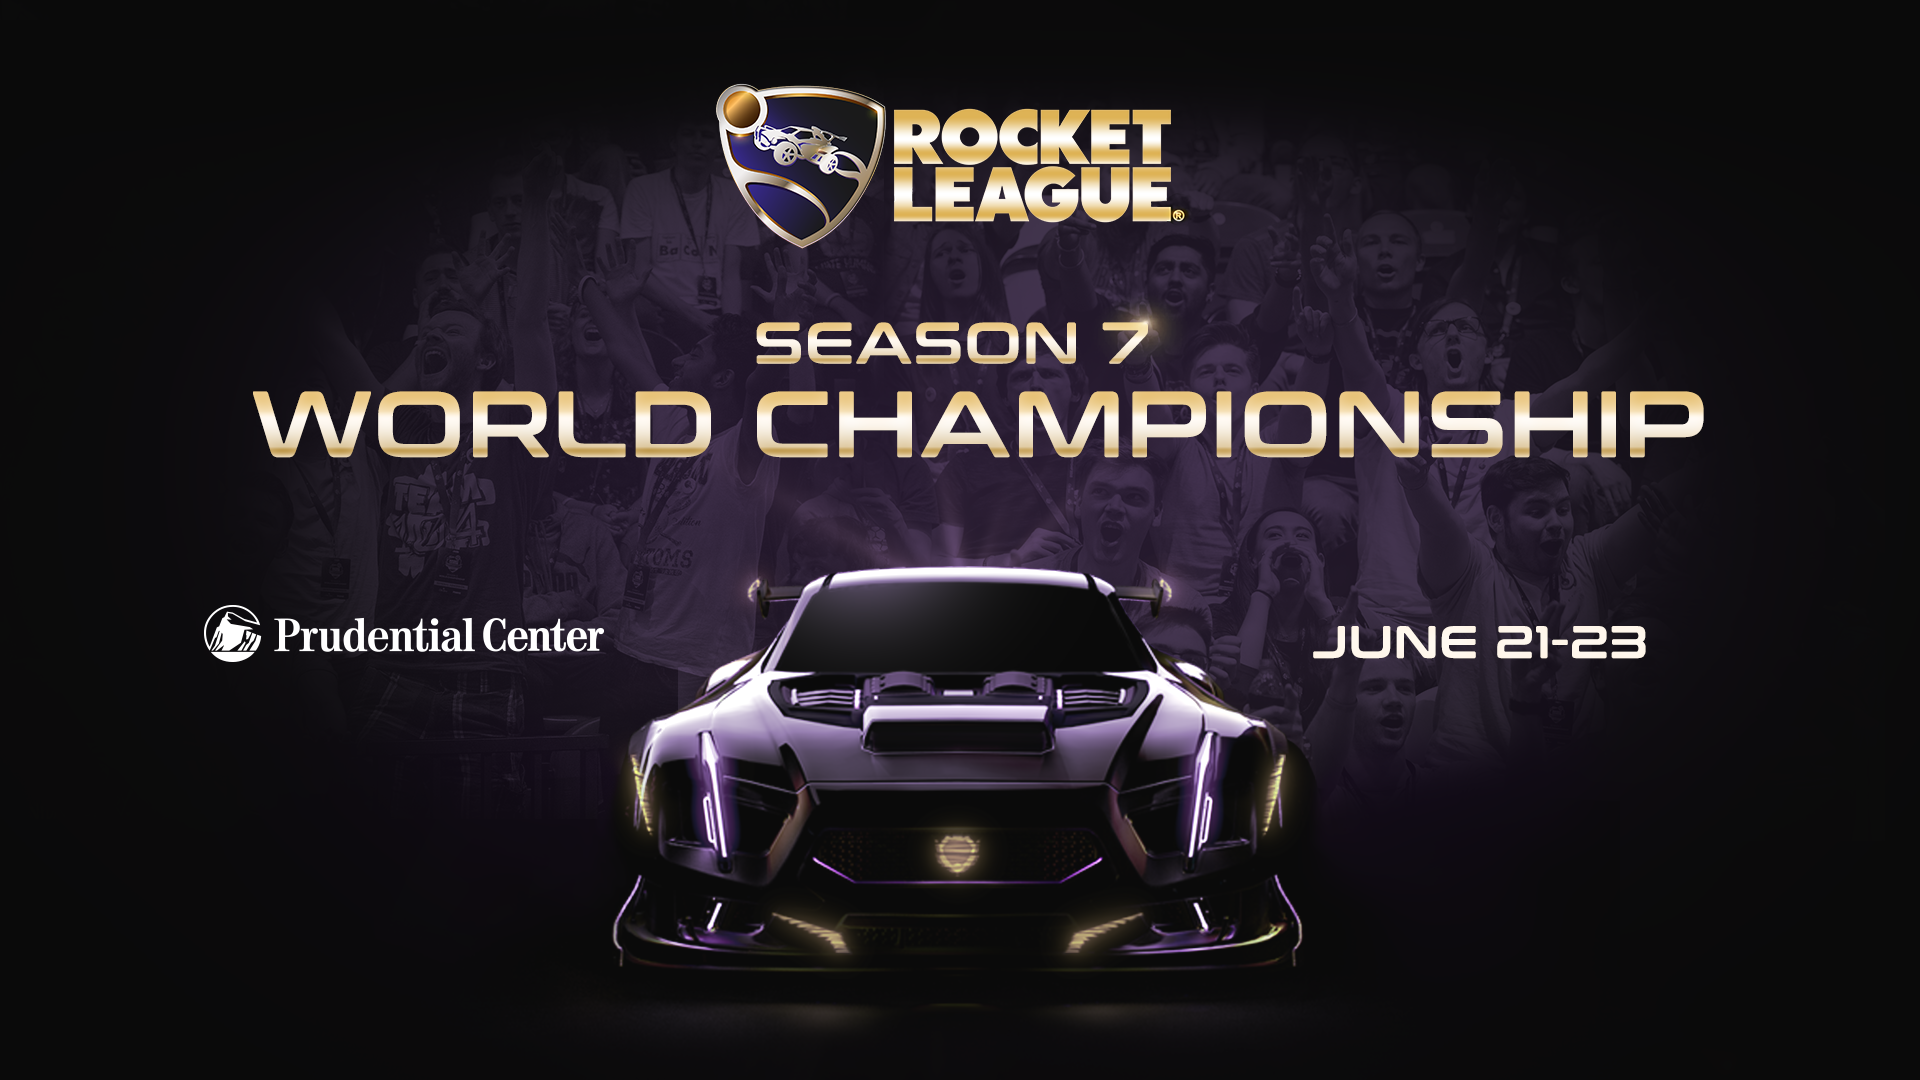 Rocket League Die World Championship rückt näher GamingGrounds.de